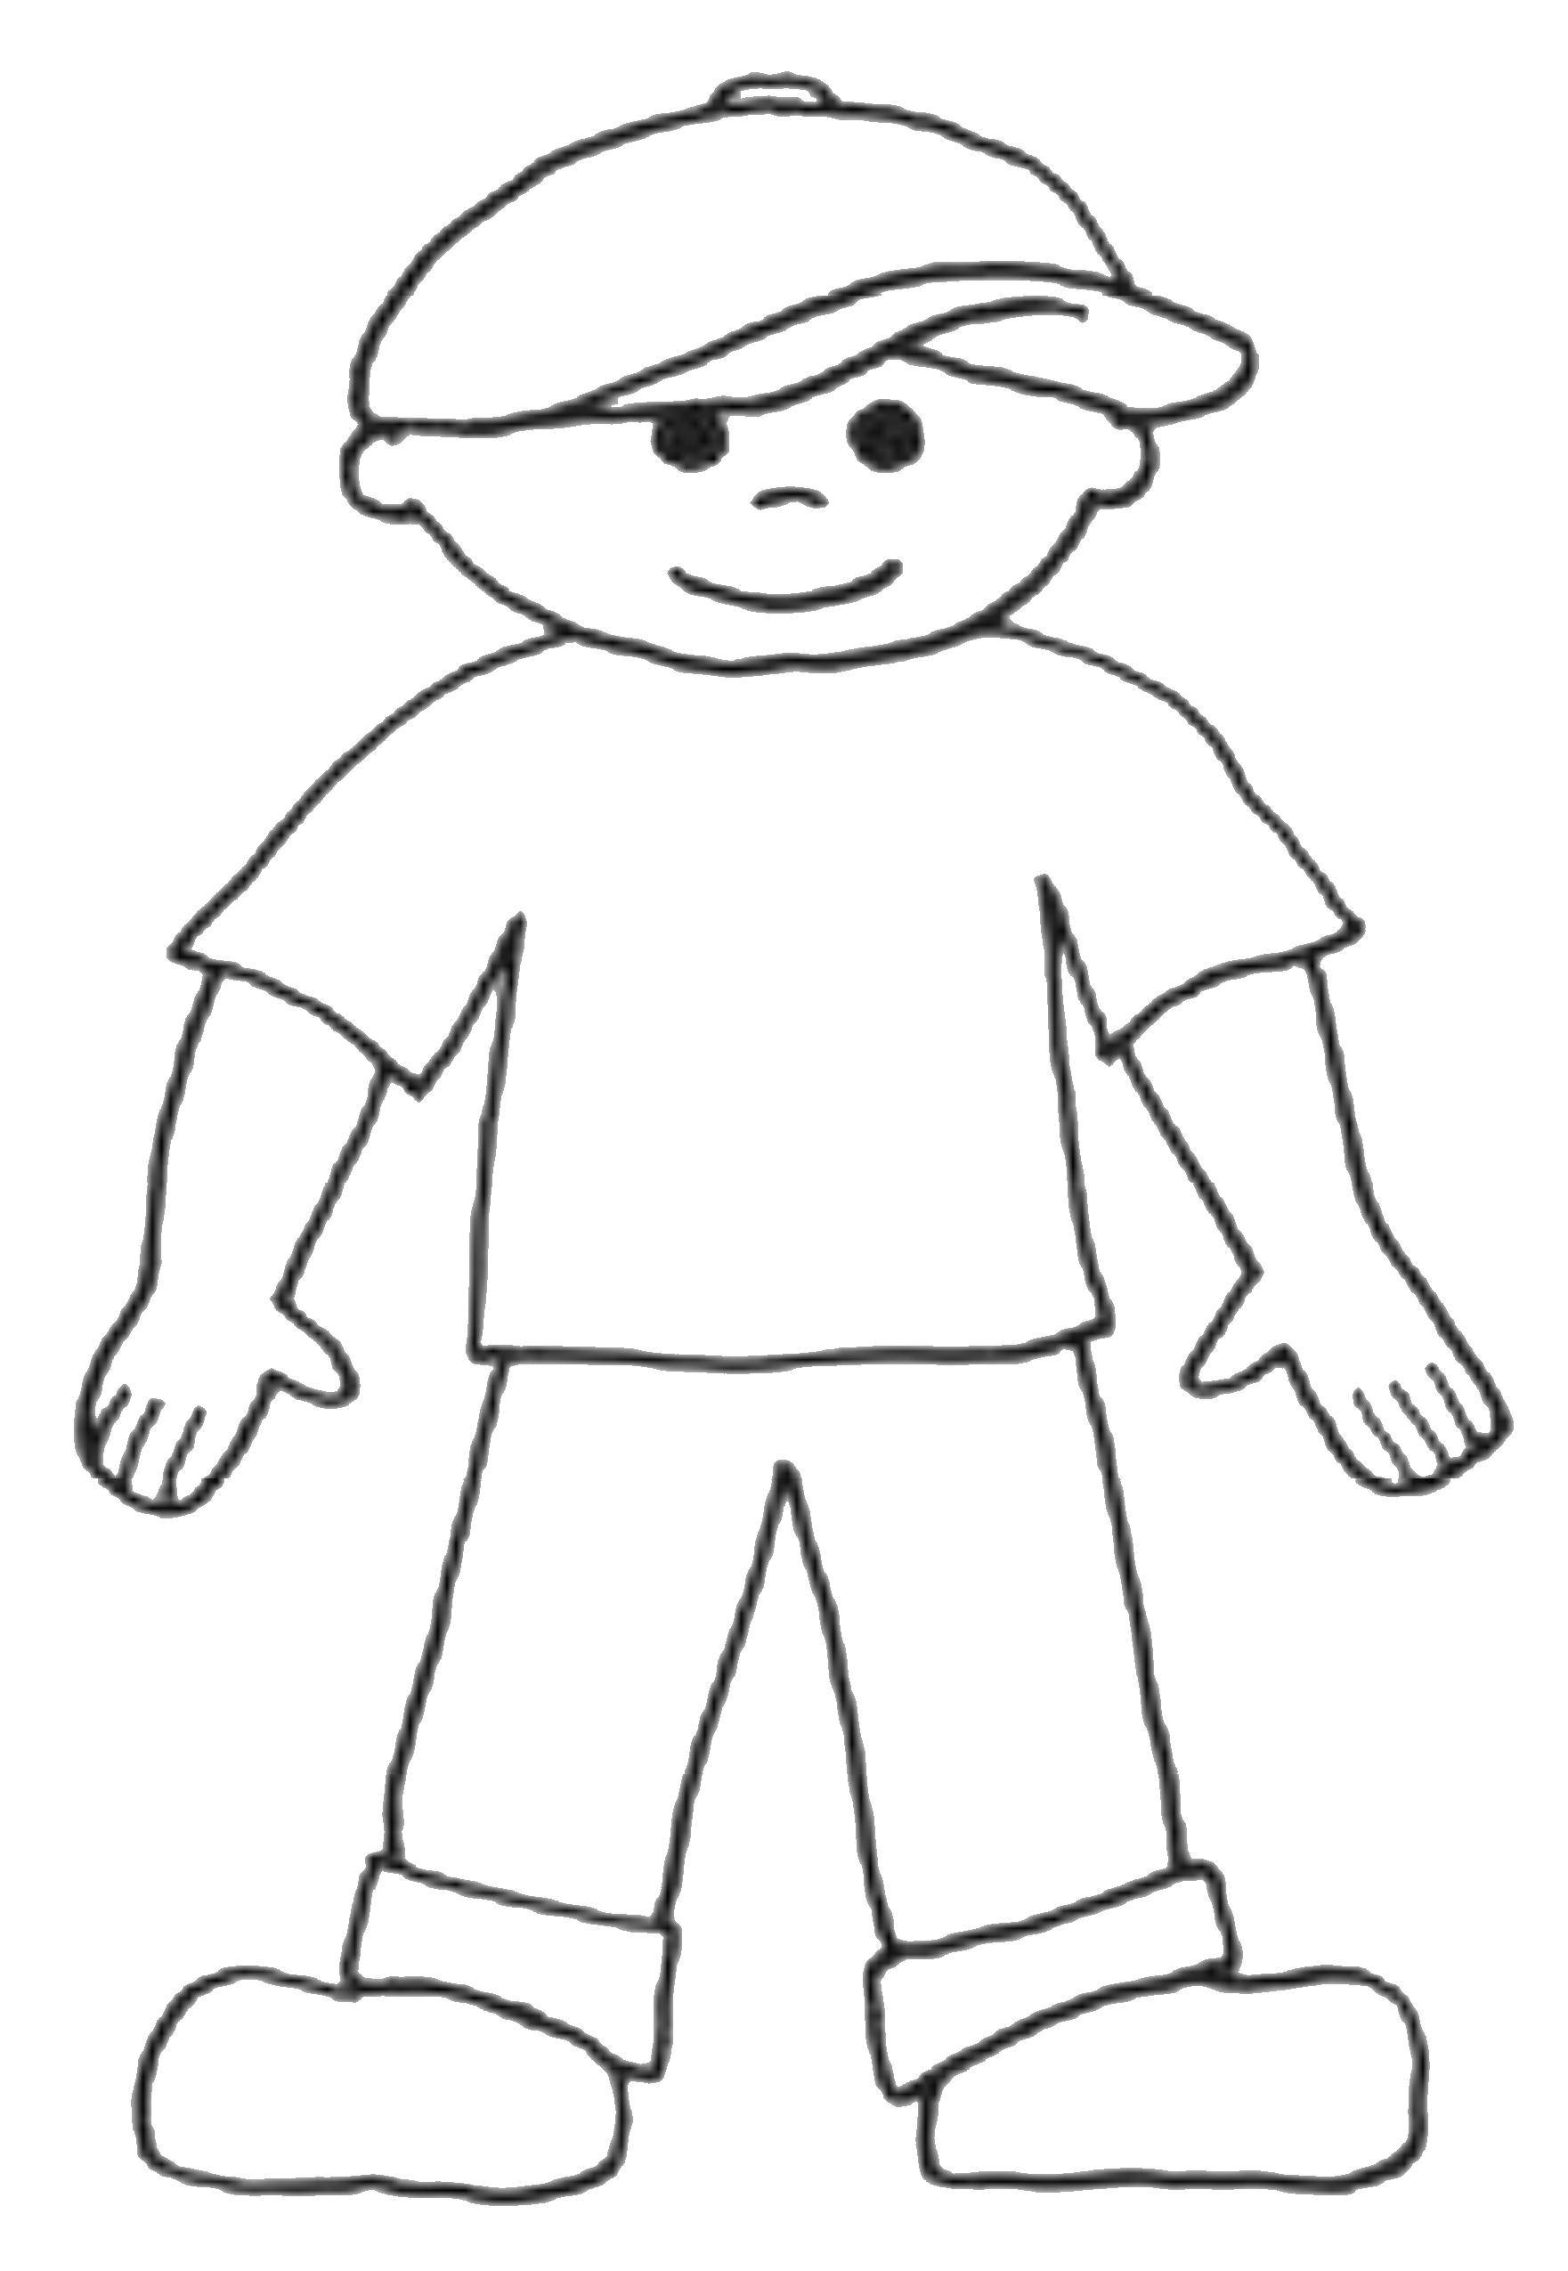 Контур мальчика в кепке и футболке - бесплатная раскраска для детей (мальчик, футболка)